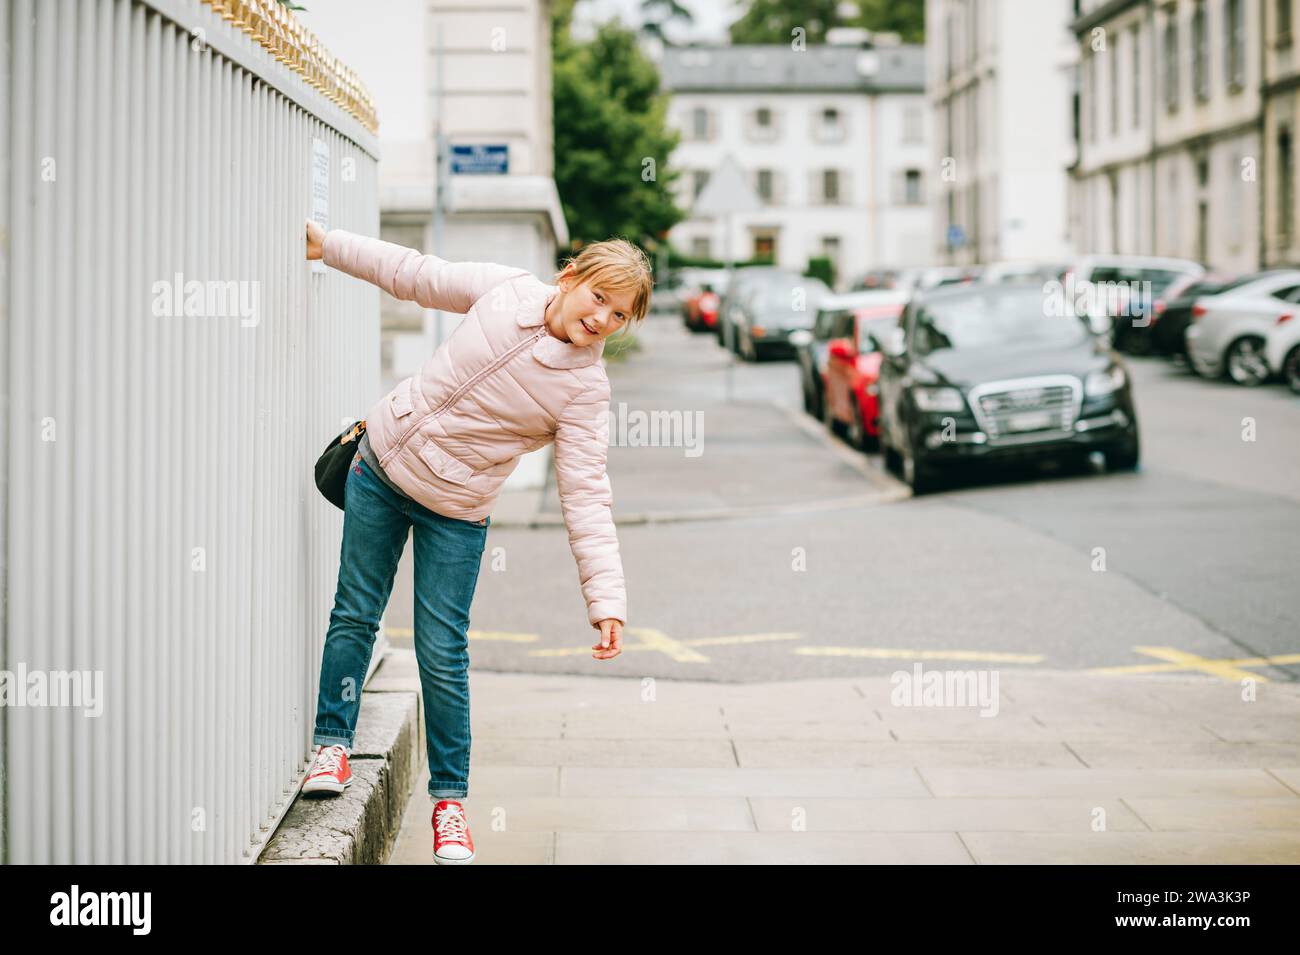 Außenporträt des lustigen kleinen Mädchens auf den Straßen von Genf, Schweiz. Das Kind trägt eine weiche pinkfarbene, gepolsterte Jacke, Jeans und rote Tennisschuhe Stockfoto